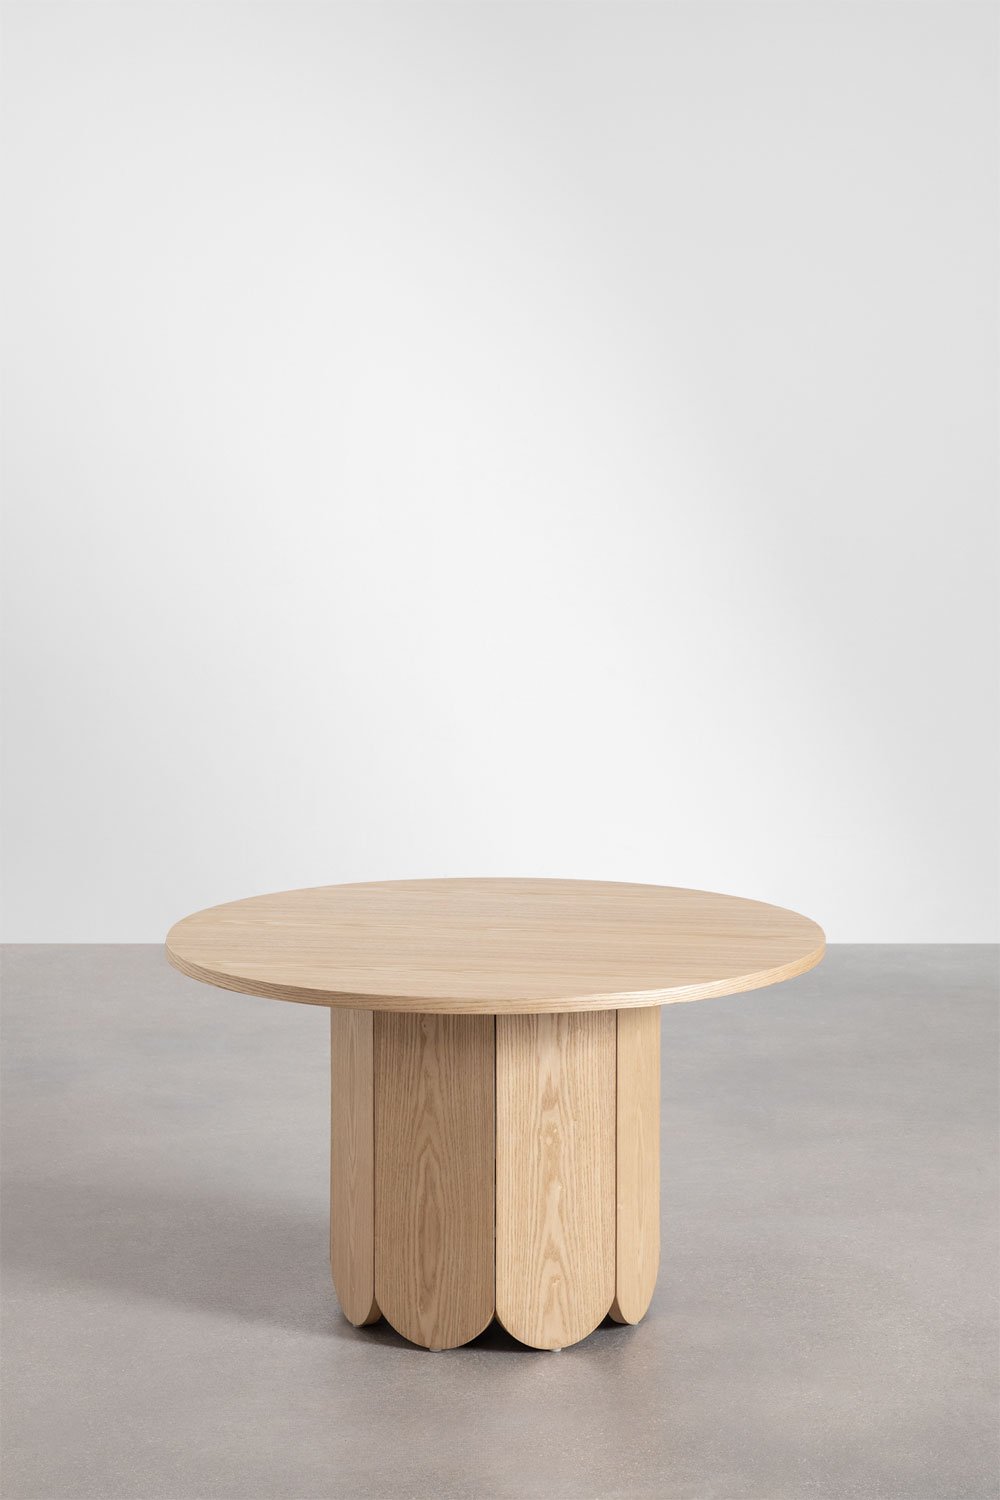 Tavolino rotondo in legno (Ø80 cm) Vinesey, immagine della galleria 2